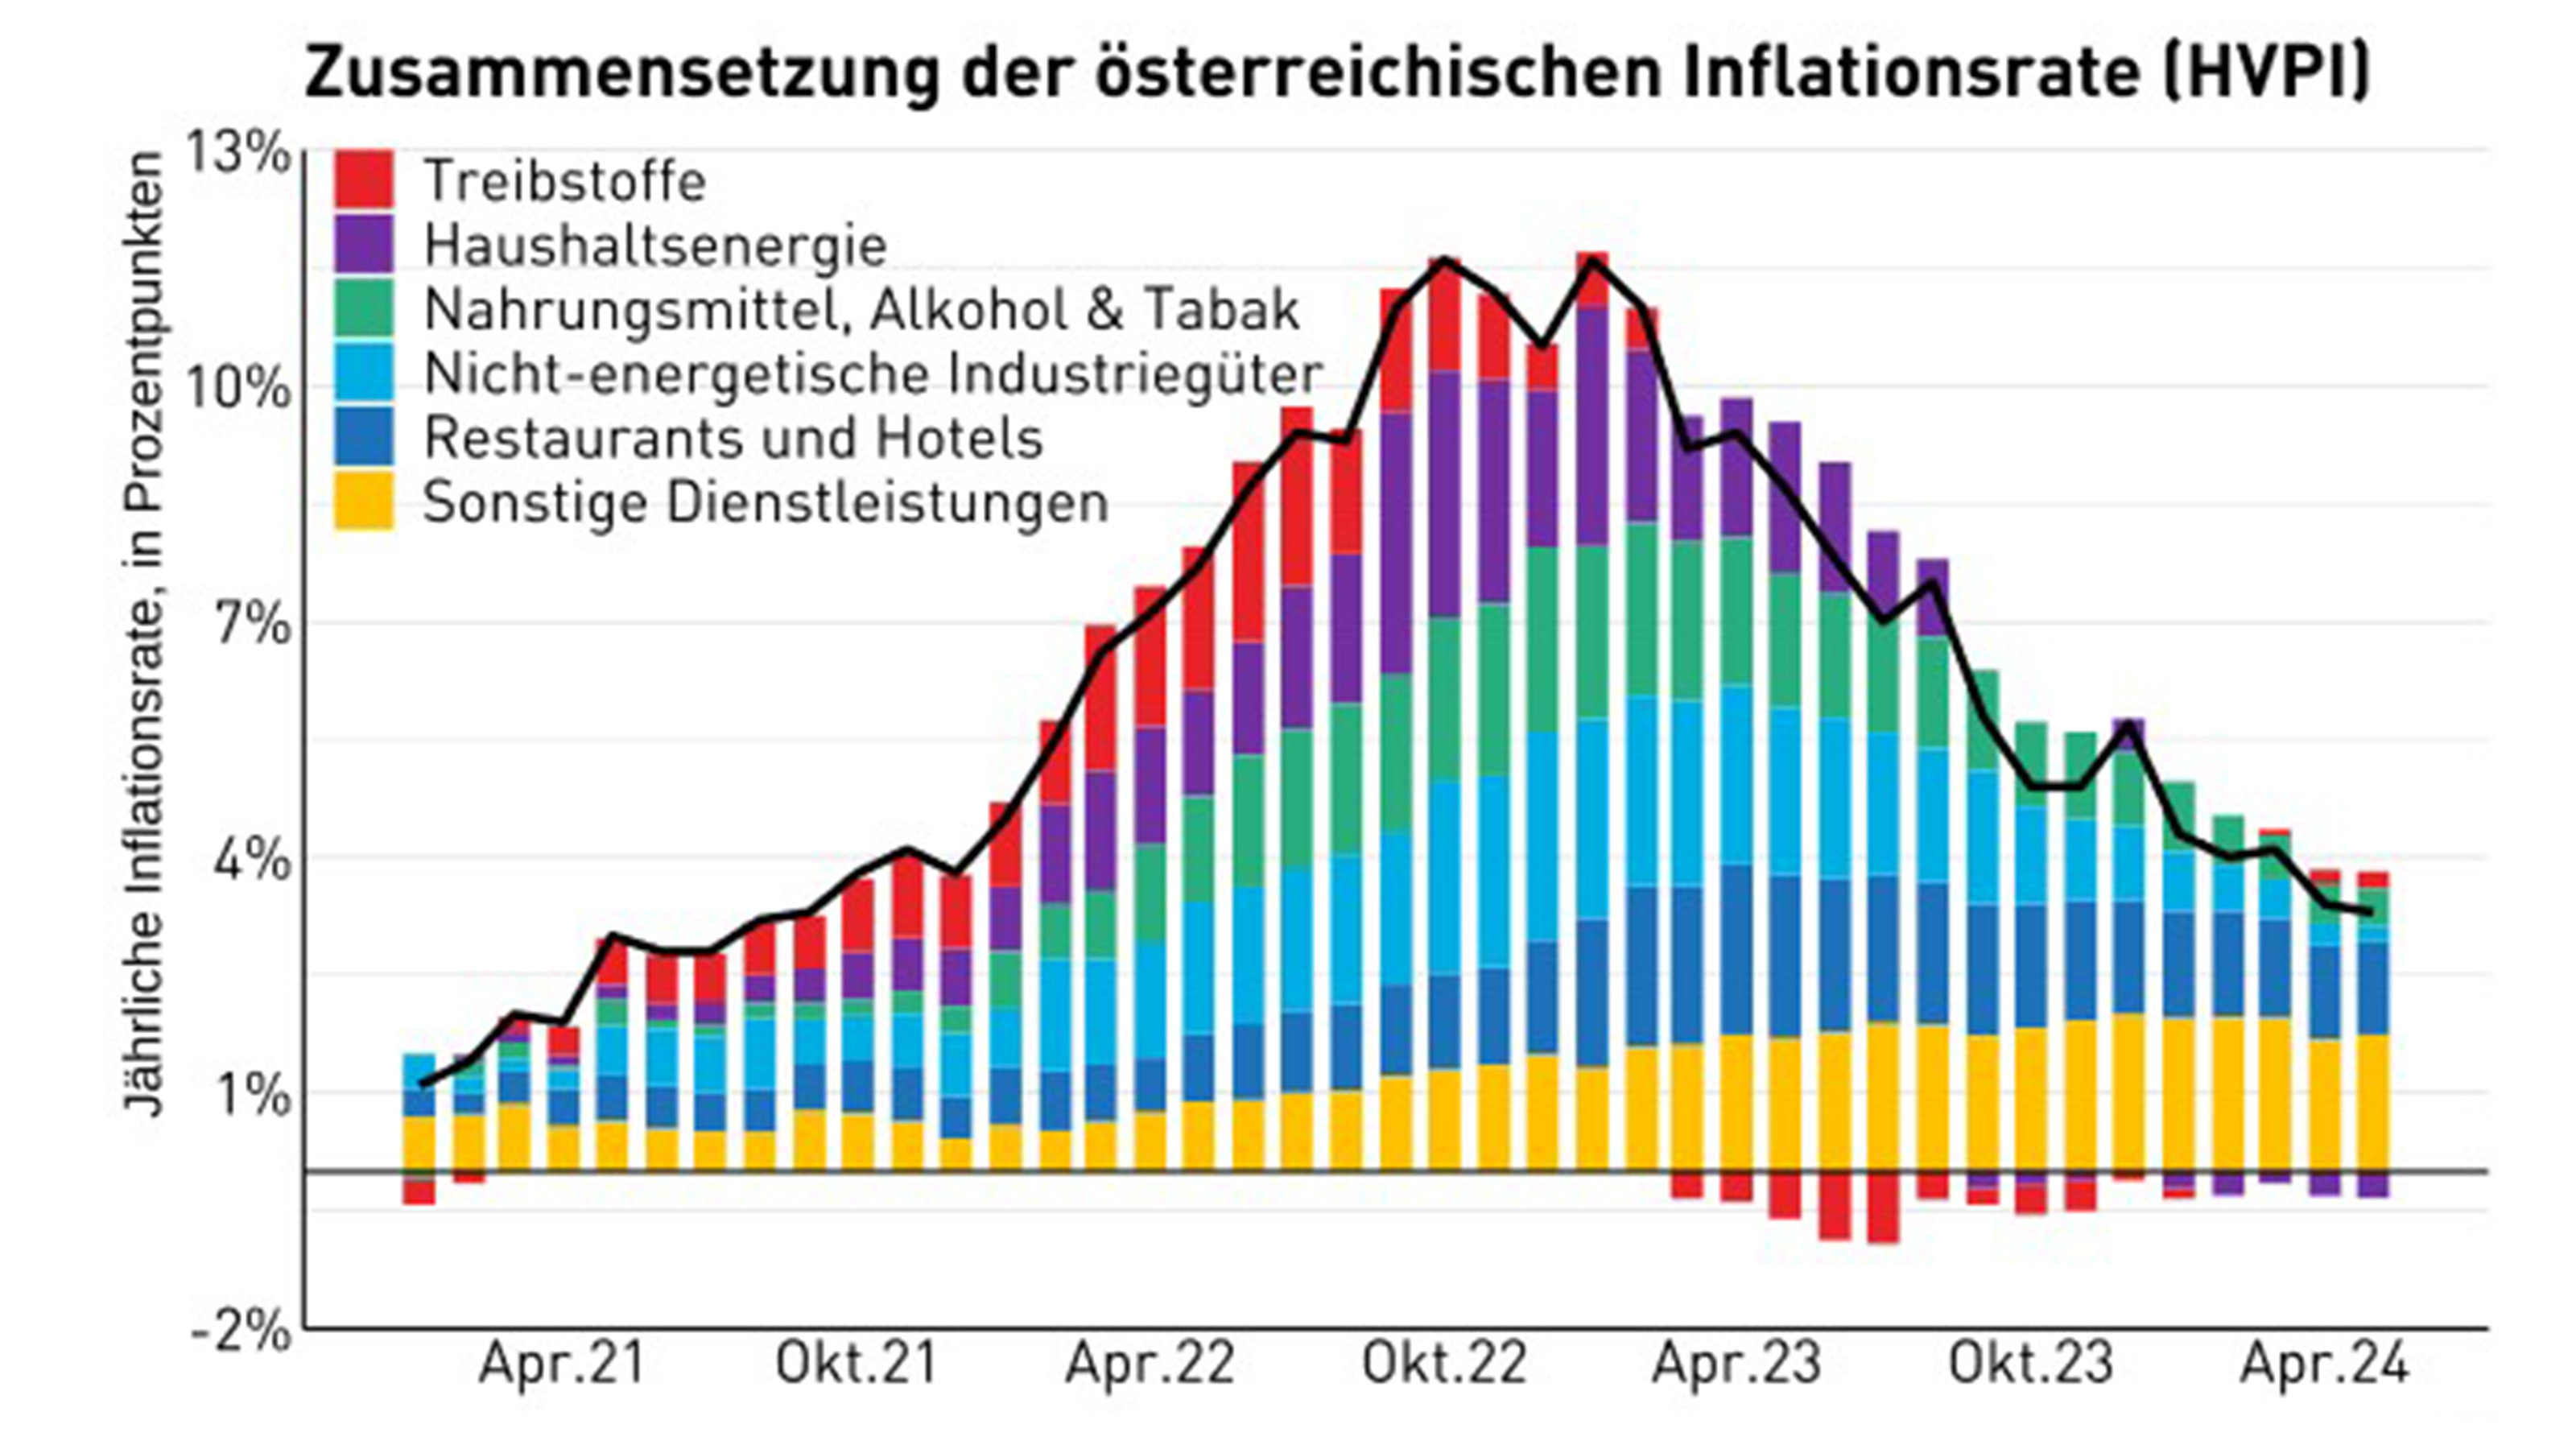 Balkendiagramm zur Zusammensetzung der österreichischen jährlichen Inflationsrate (HVPI) in Prozent, führend dabei die Kategorie Treibstoffe